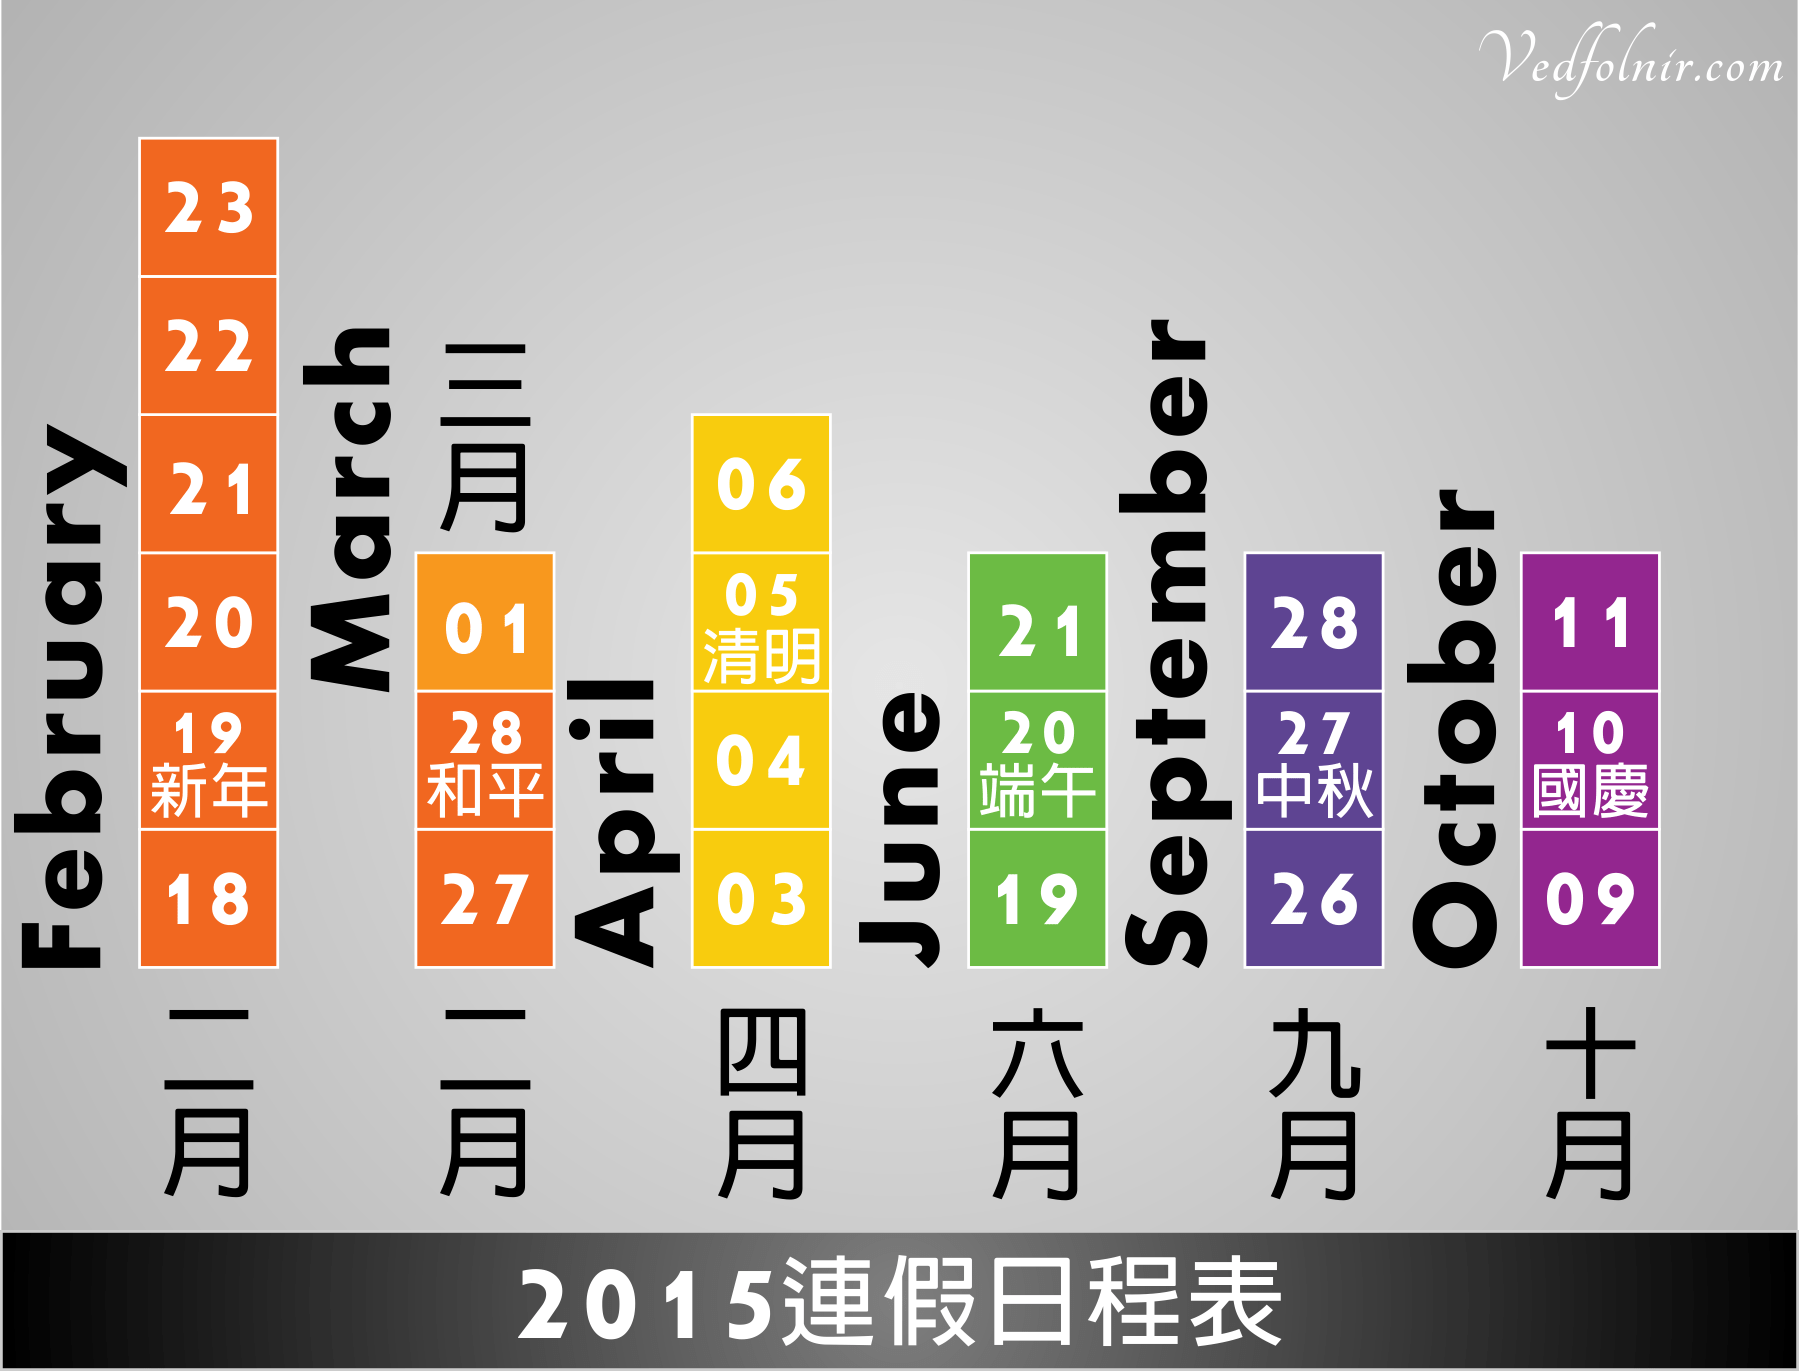 2015-104-年-放假-假期-連假-日程表-vedfolnir-deigned